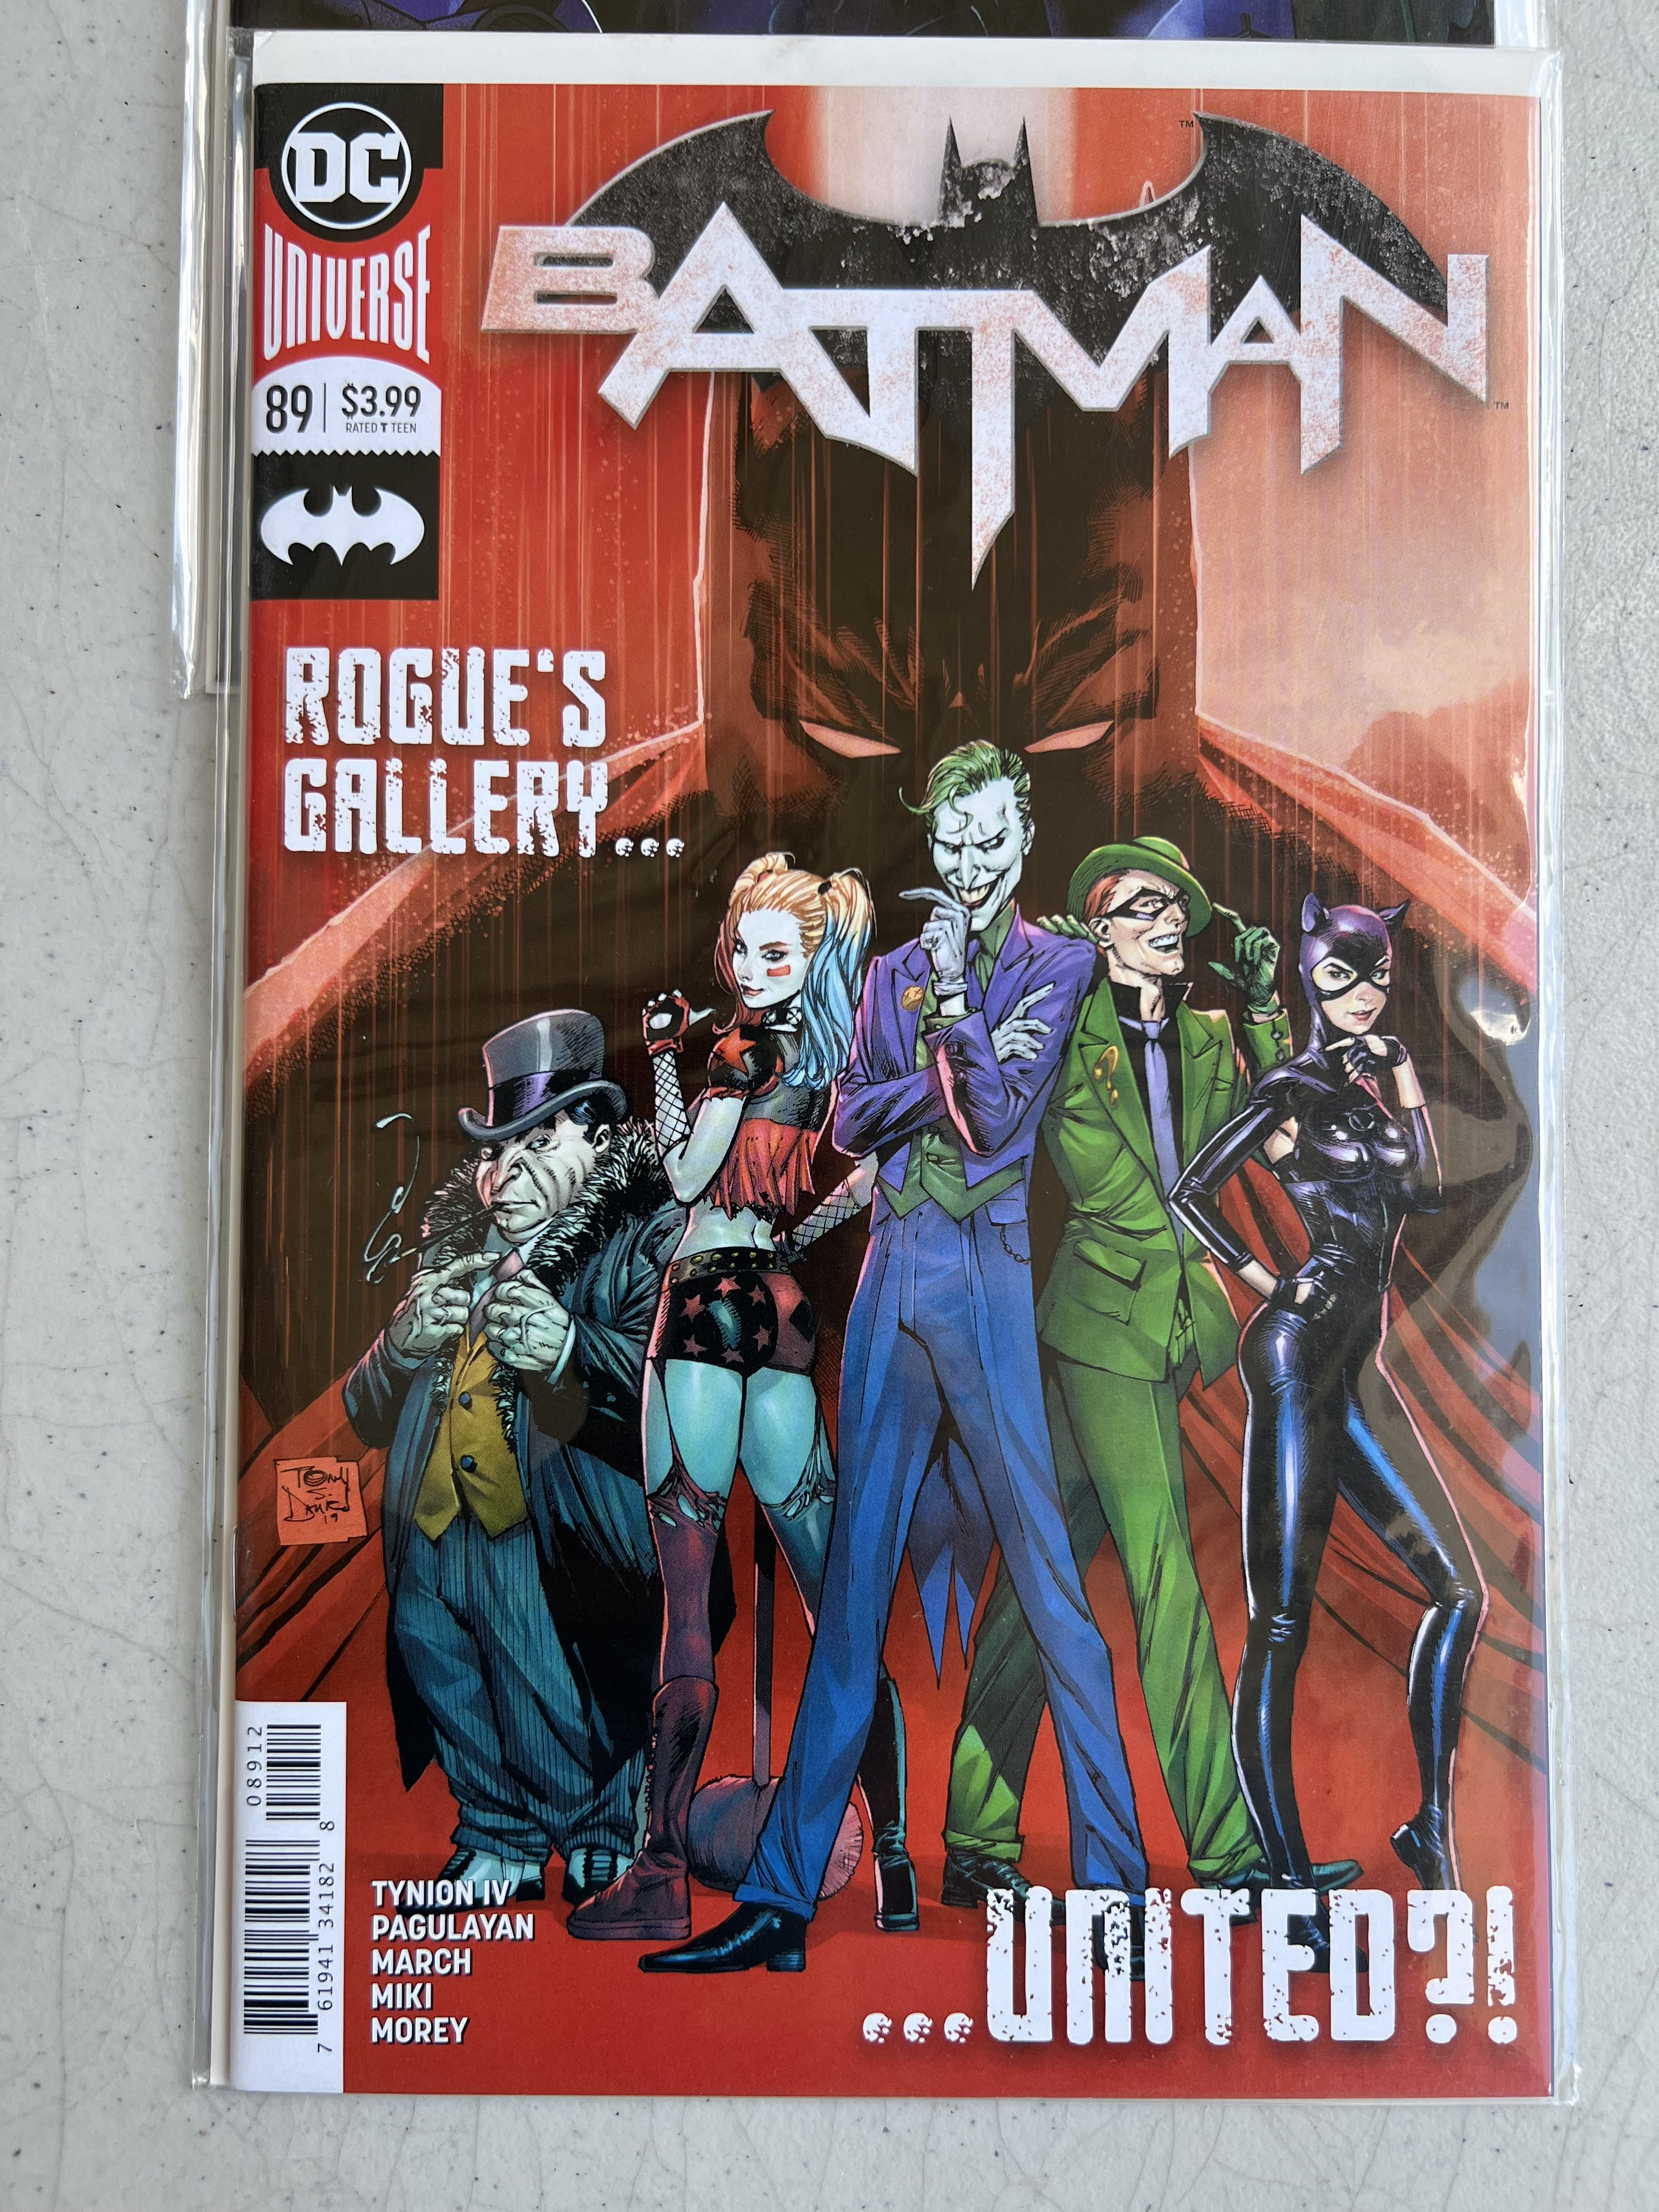 Comic Book Batman collectio lot 7 DC comics